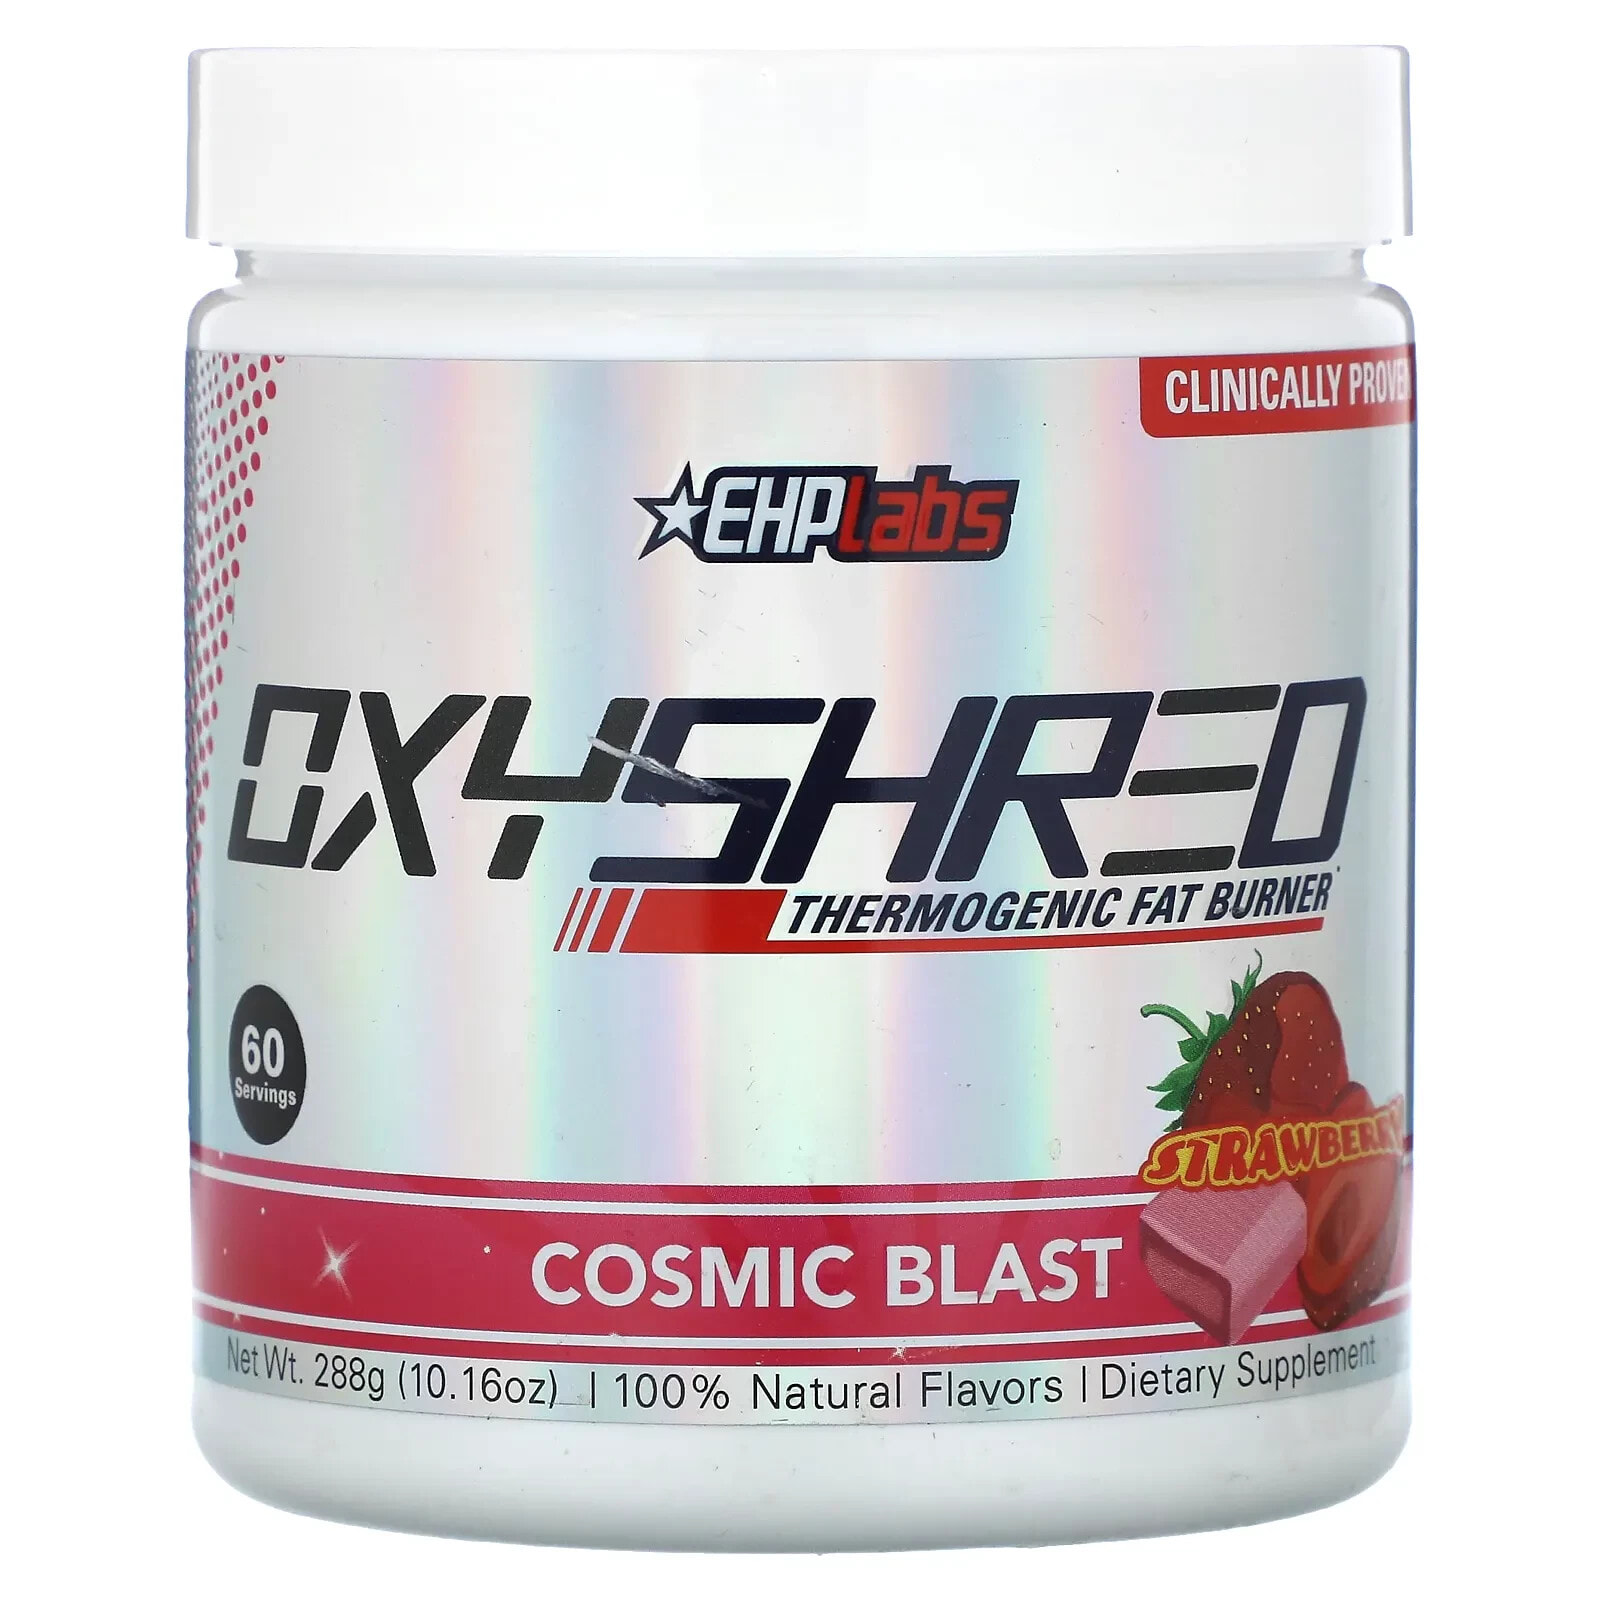 Oxyshred Thermogenic Fat Burner, Cosmic Blast, Strawberry, 10.16 oz (288 g)